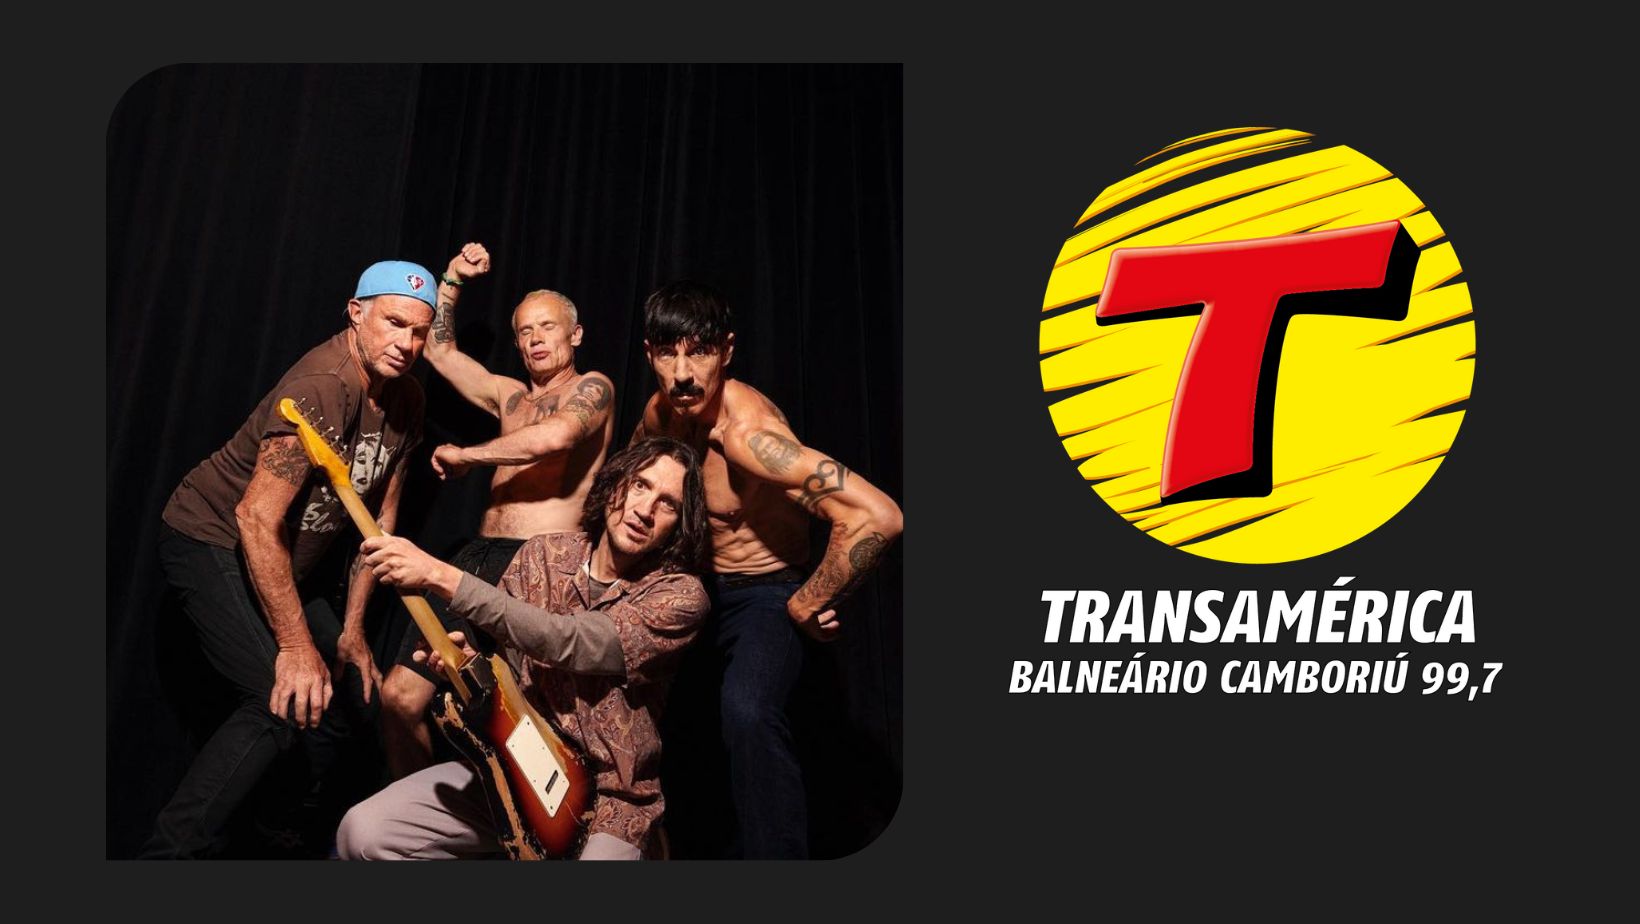 As 20 músicas mais tocadas pelo Red Hot Chili Peppers na sua turnê mundial  - Rádio Transamérica 99,7 FM